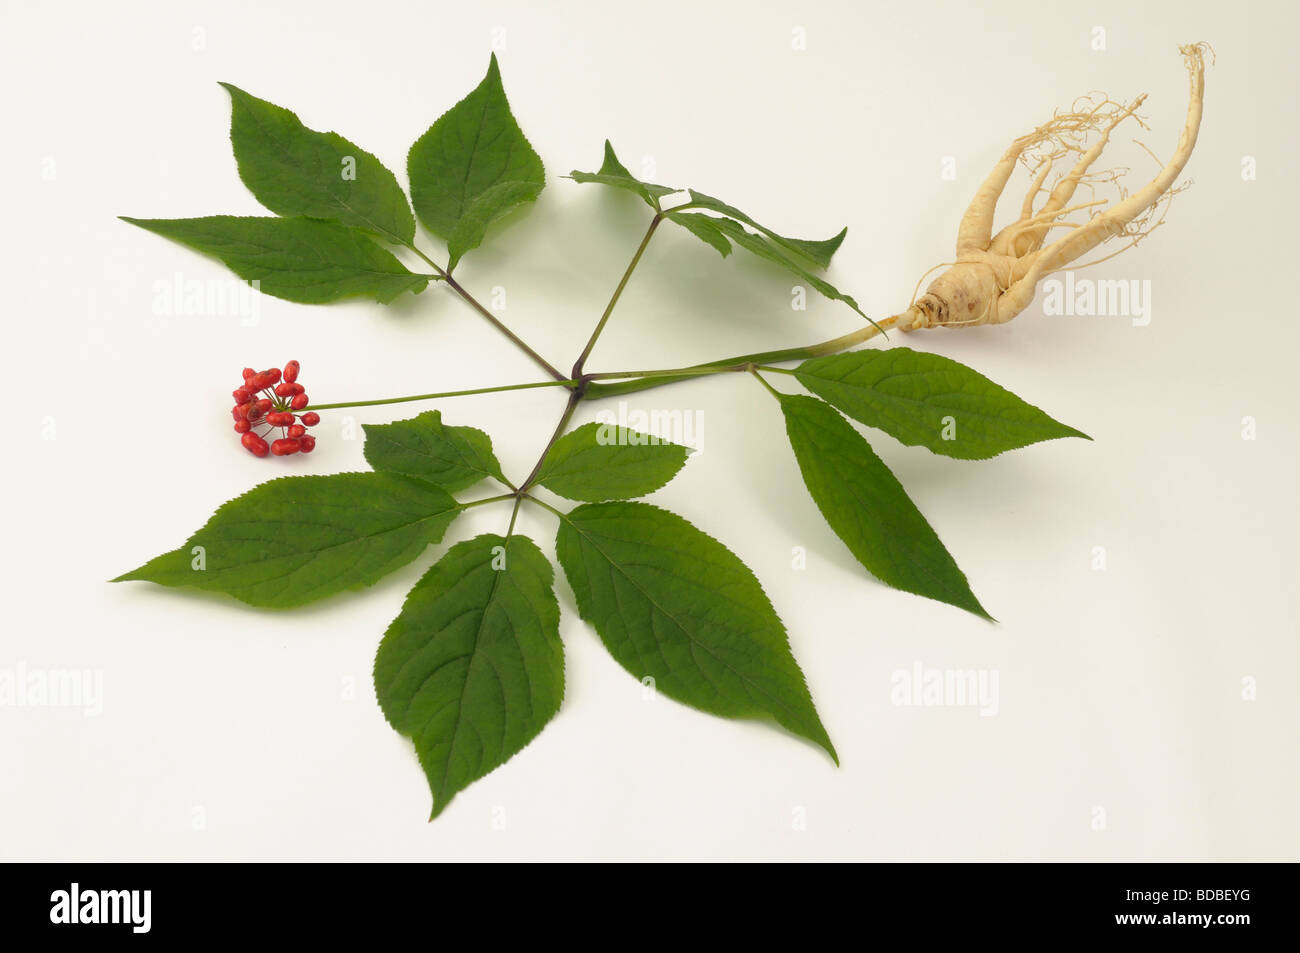 Le Ginseng (Panax ginseng). Toute la plante, studio photo Banque D'Images